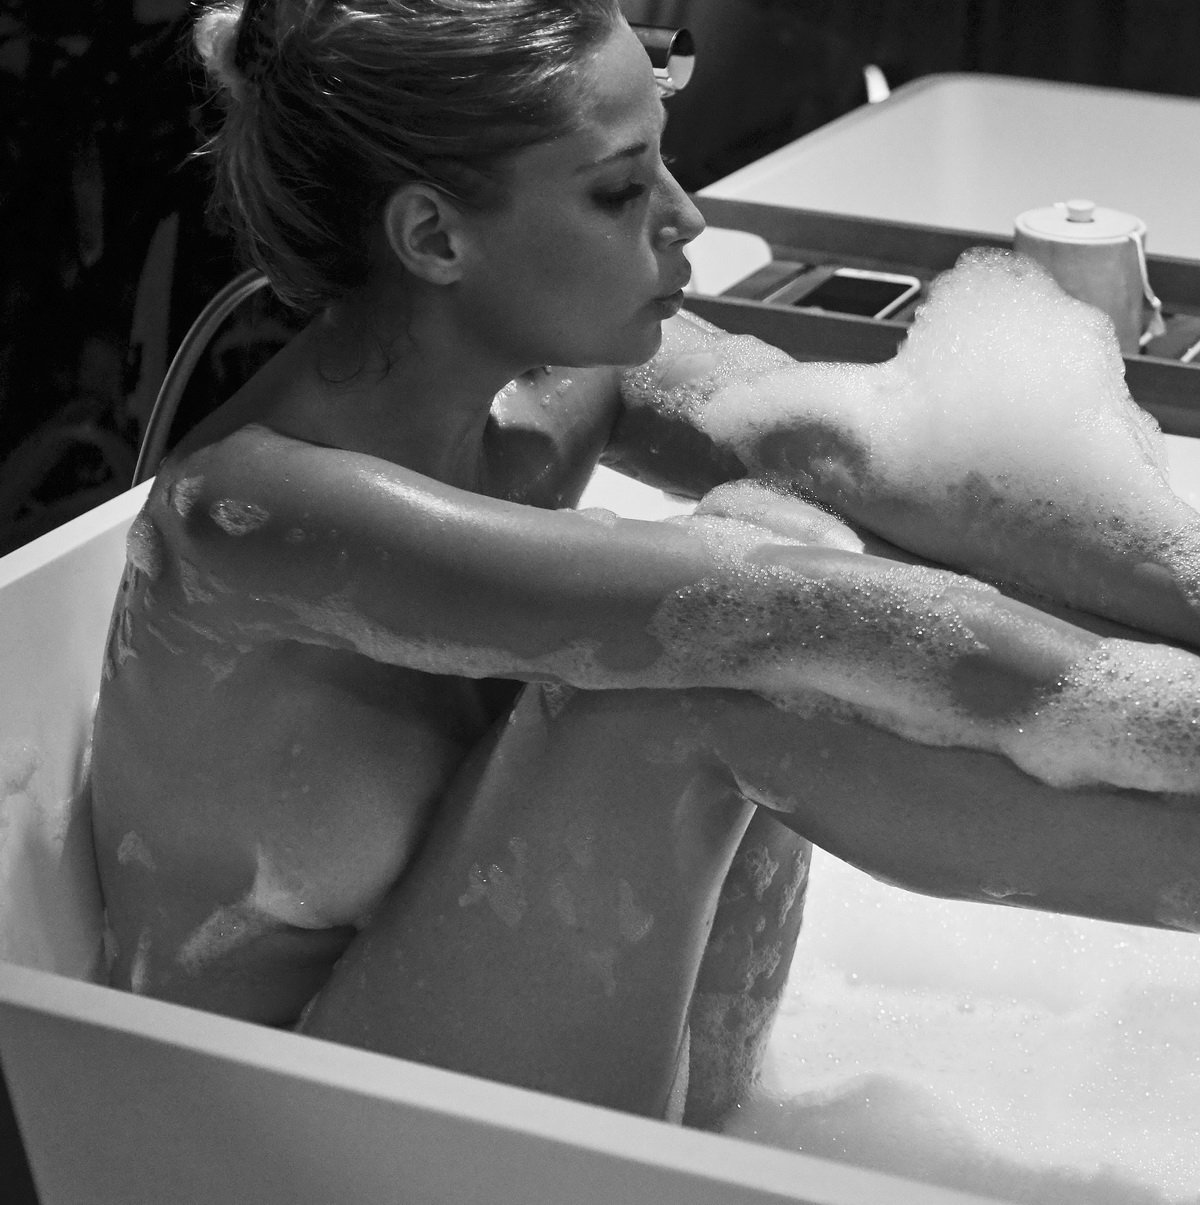 Genevieve morton bathtub series